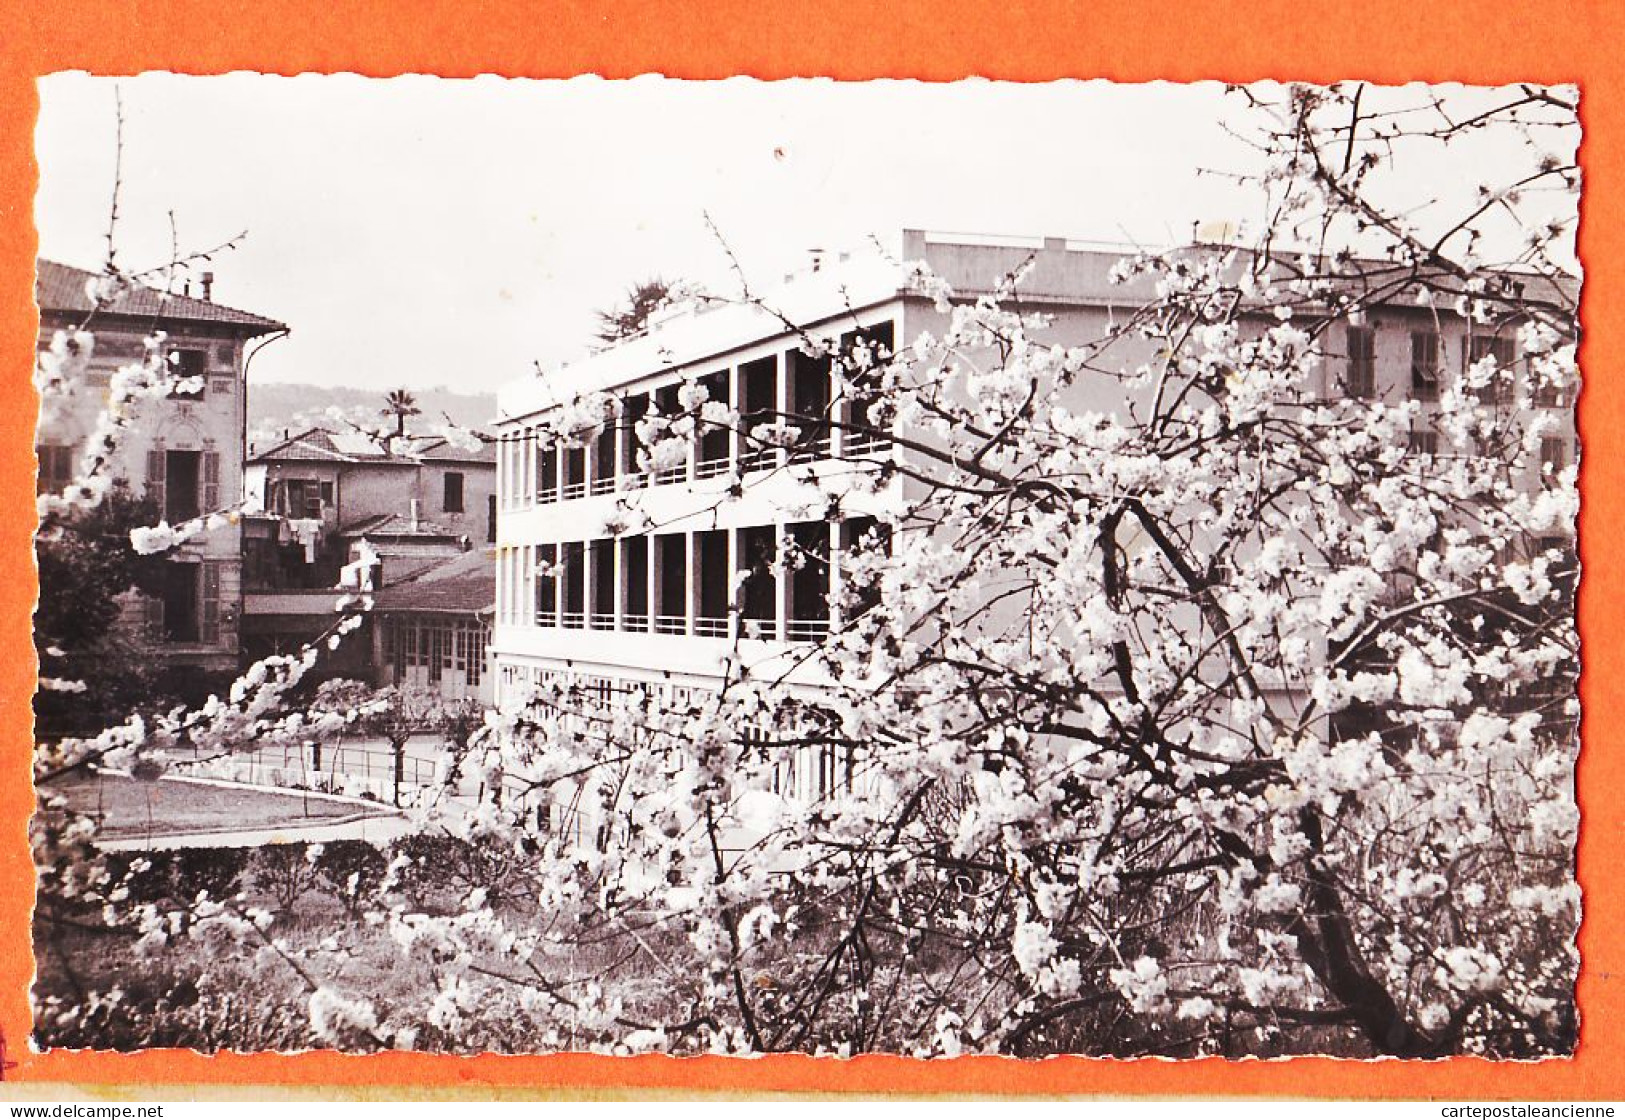 03507 / NICE Pavillon NOTRE-DAME N-D Foyer SAINT-DOMINIQUE Repos Convalescence Avenue ACACIAS 1950s Photo-Bromure - Santé, Hôpitaux